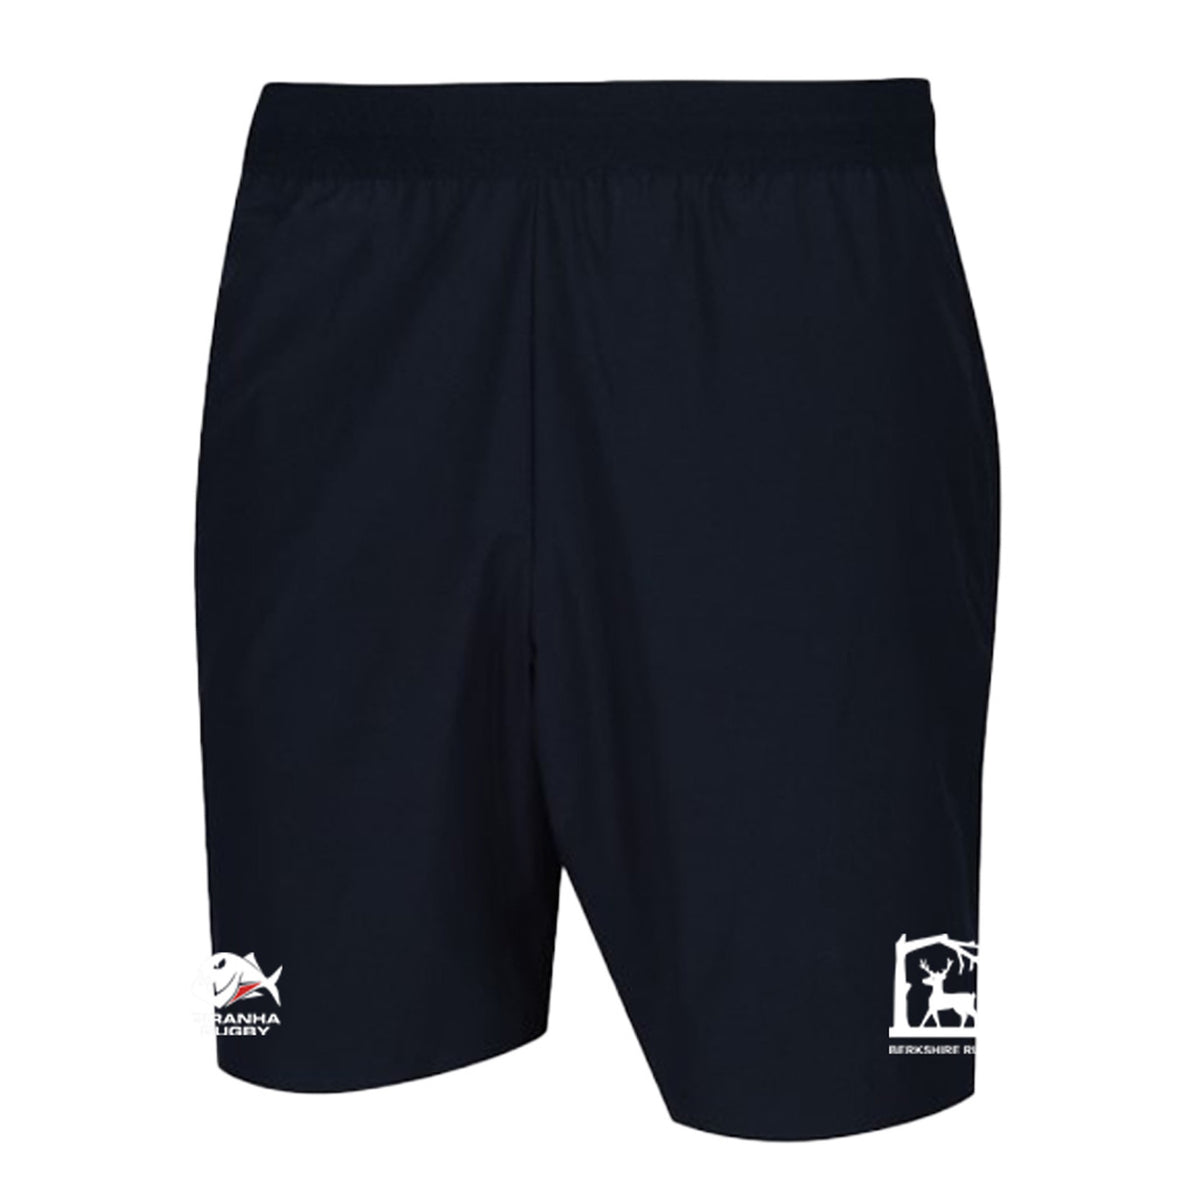 Berkshire RFU Gym Shorts: Navy